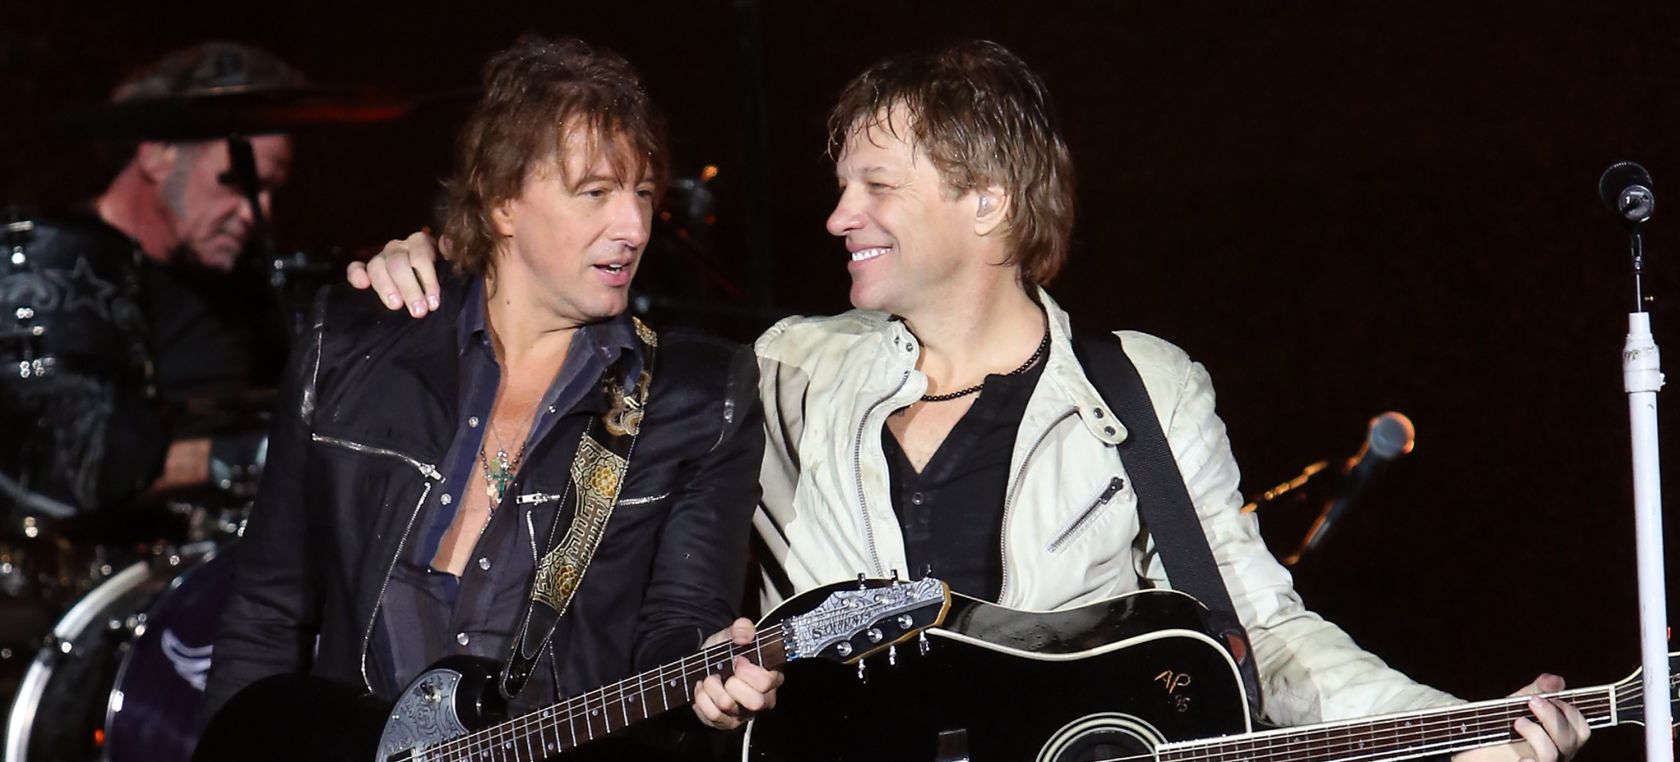 El guitarrista Richie Sambora habla sobre una posible vuelta a Bon Jovi